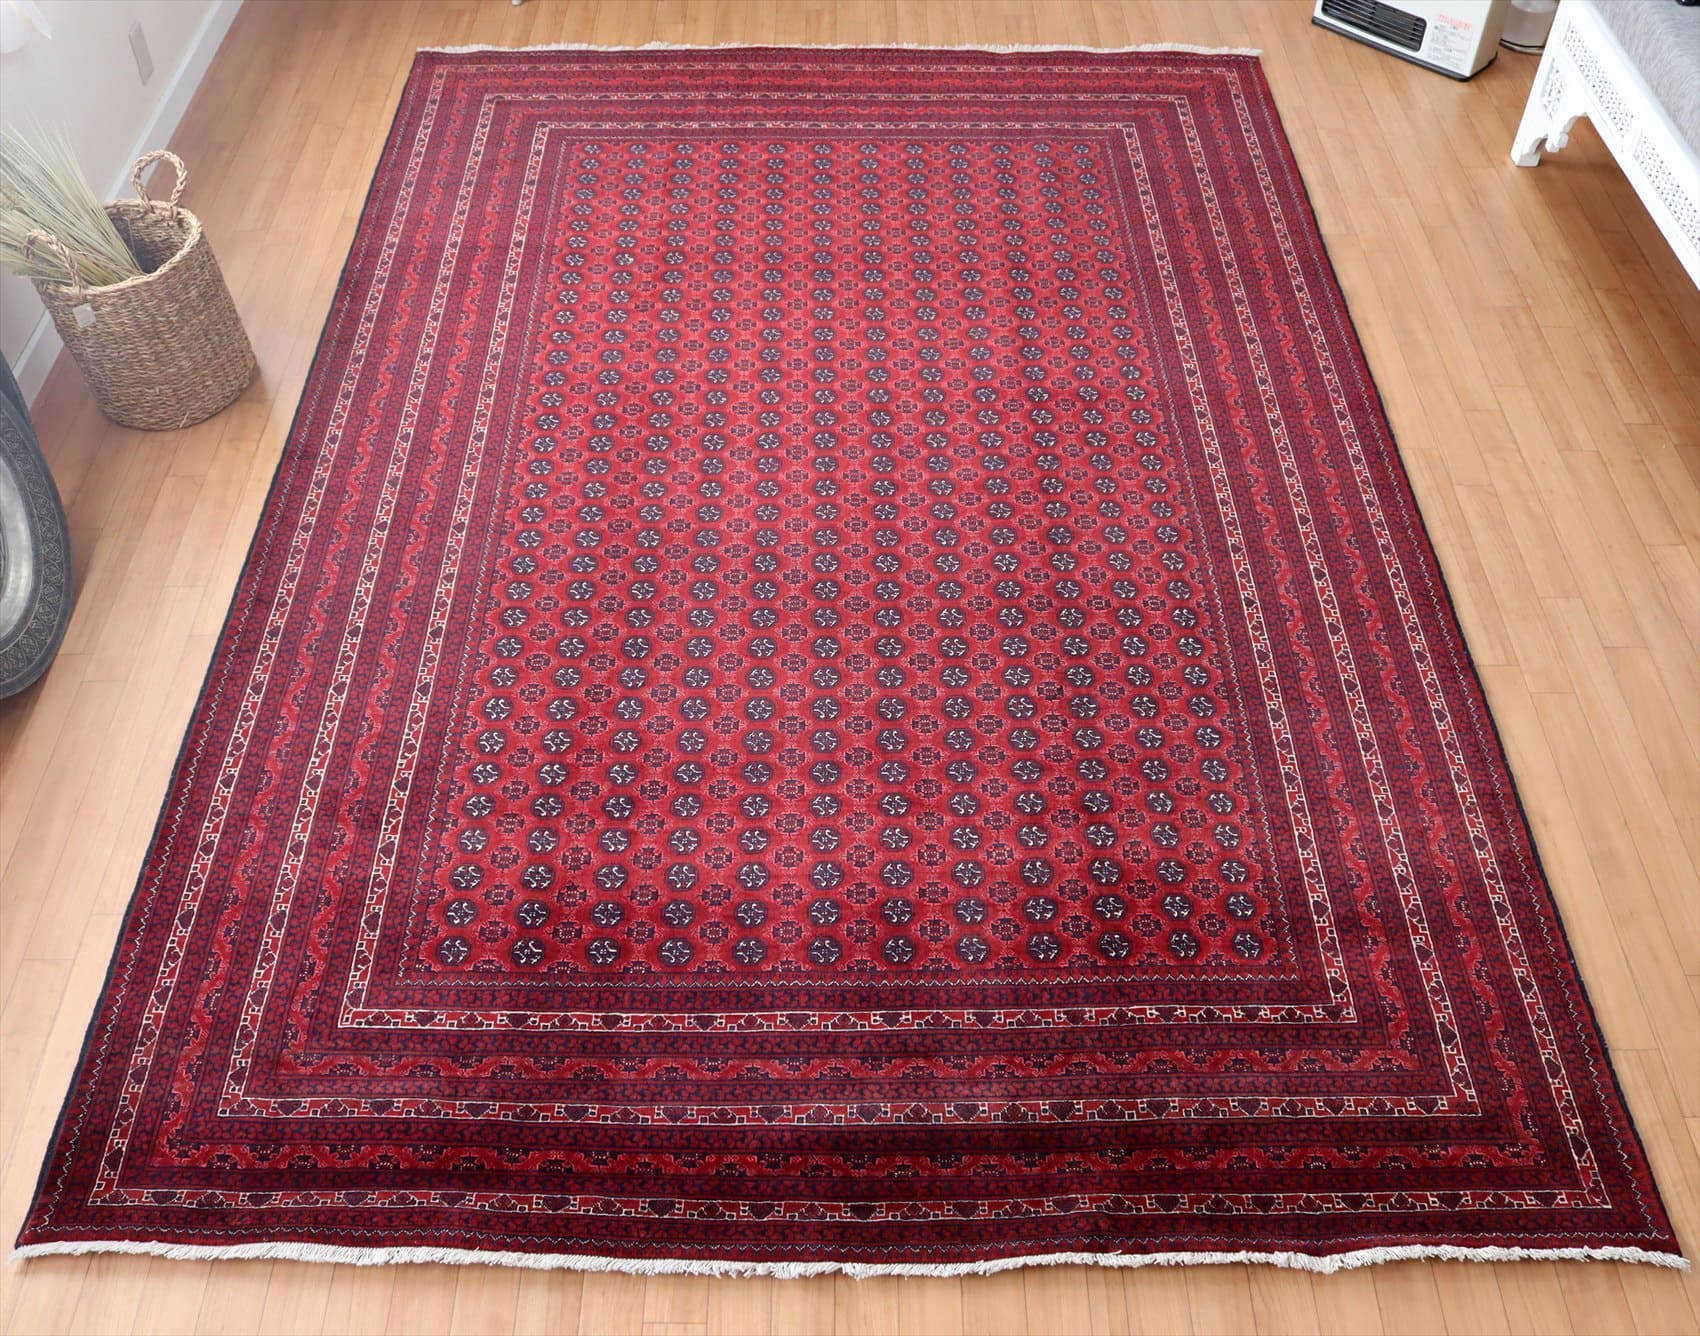 Kunduz クンドゥズ 赤いじゅうたん 手織りラグ301×200cm ビロードのようなツヤのある緻密な織り